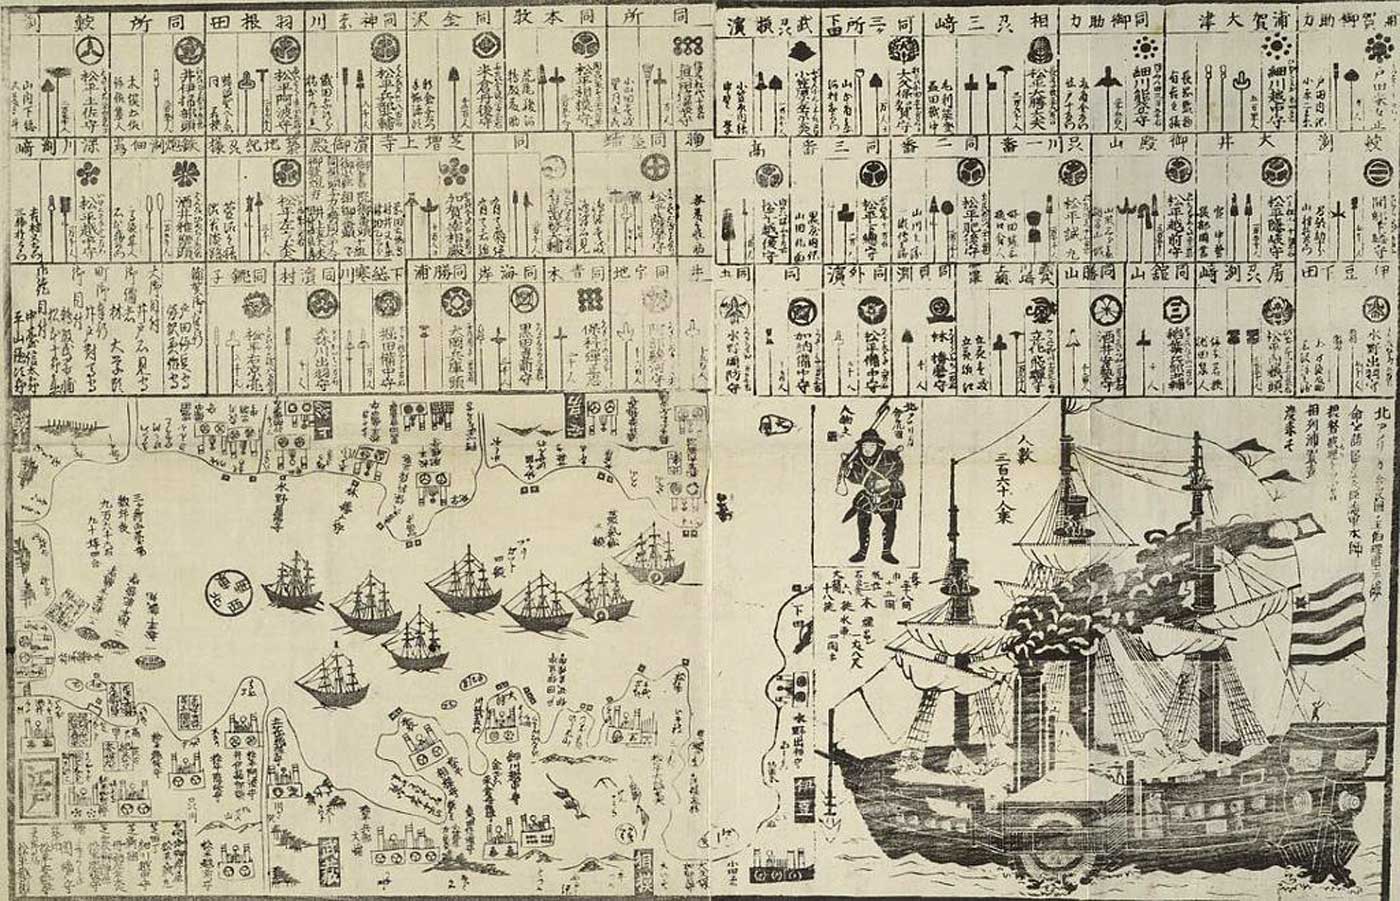 Le navi nere di Perry secondo una stampa giapponese del 1854.